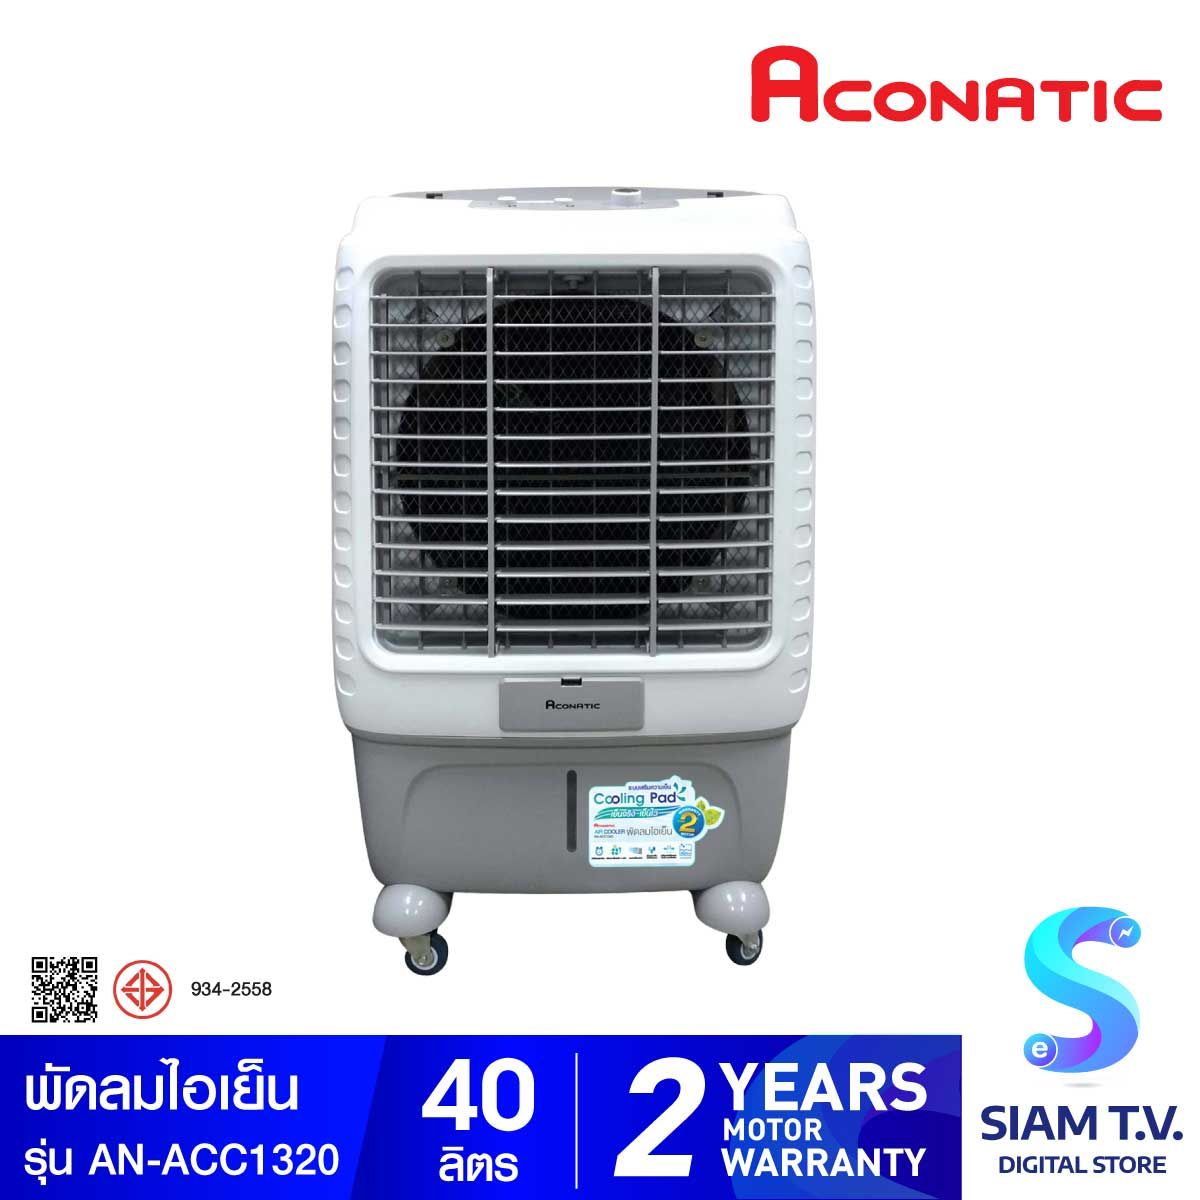 ACONATIC พัดลมไอเย็น รุ่น AN-ACC1320 ความจุน้ำ 40 ลิตร